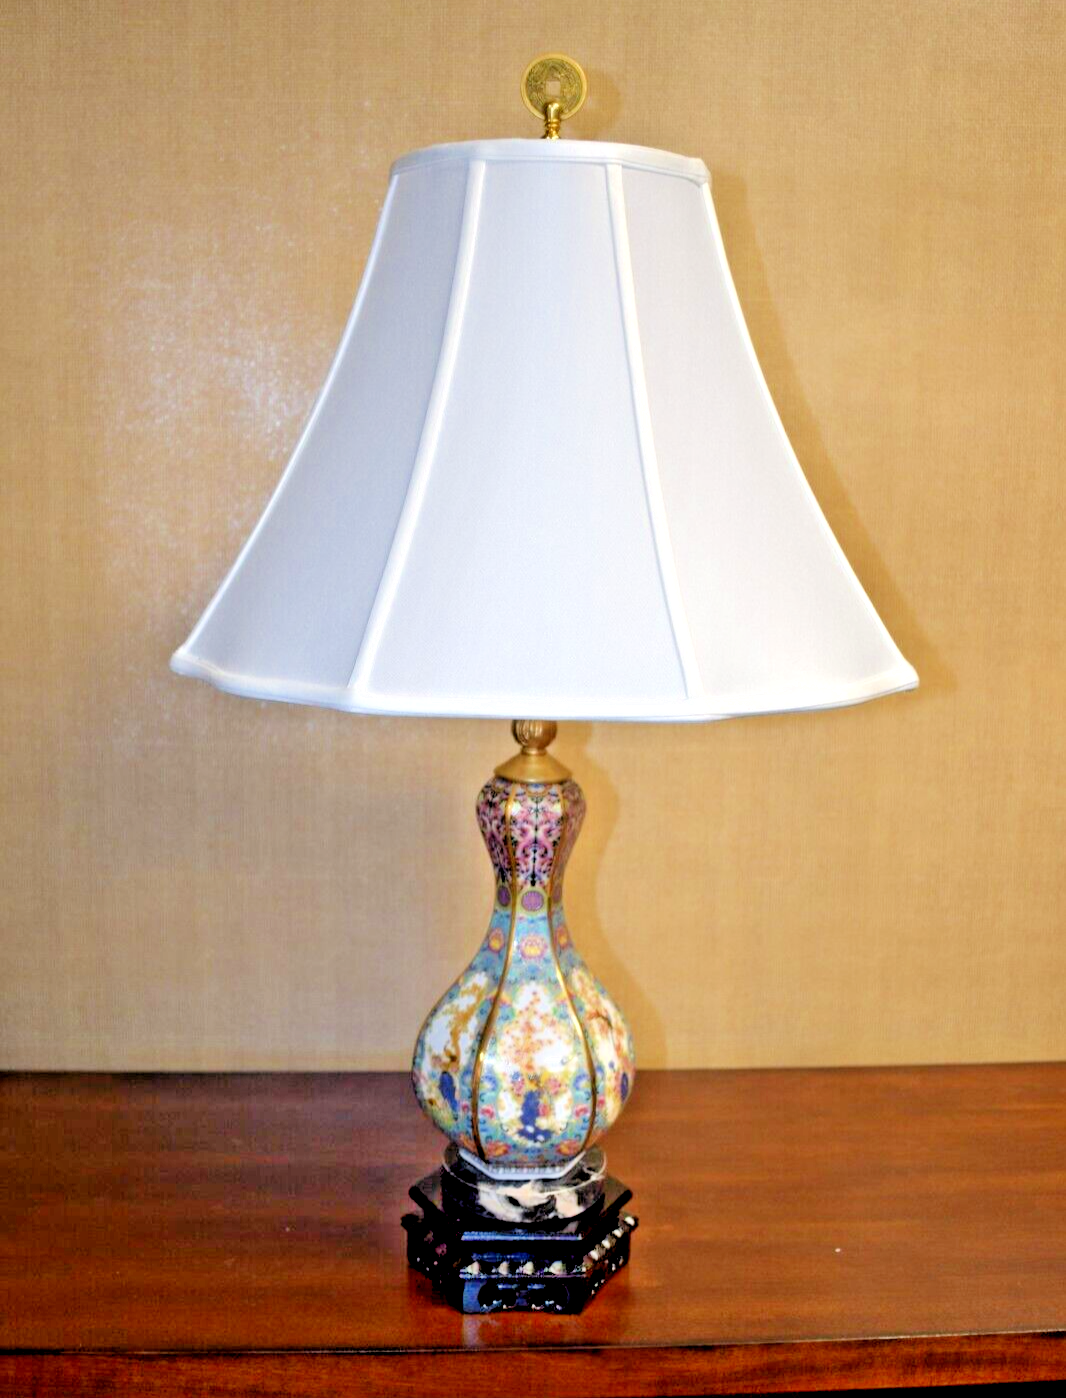 PAIR OF 26" PORCELAIN HEX ANTIQUE REPRODUCTION VASE LAMP   JINGDEZHEN CLASSIC DECOR LAMPS